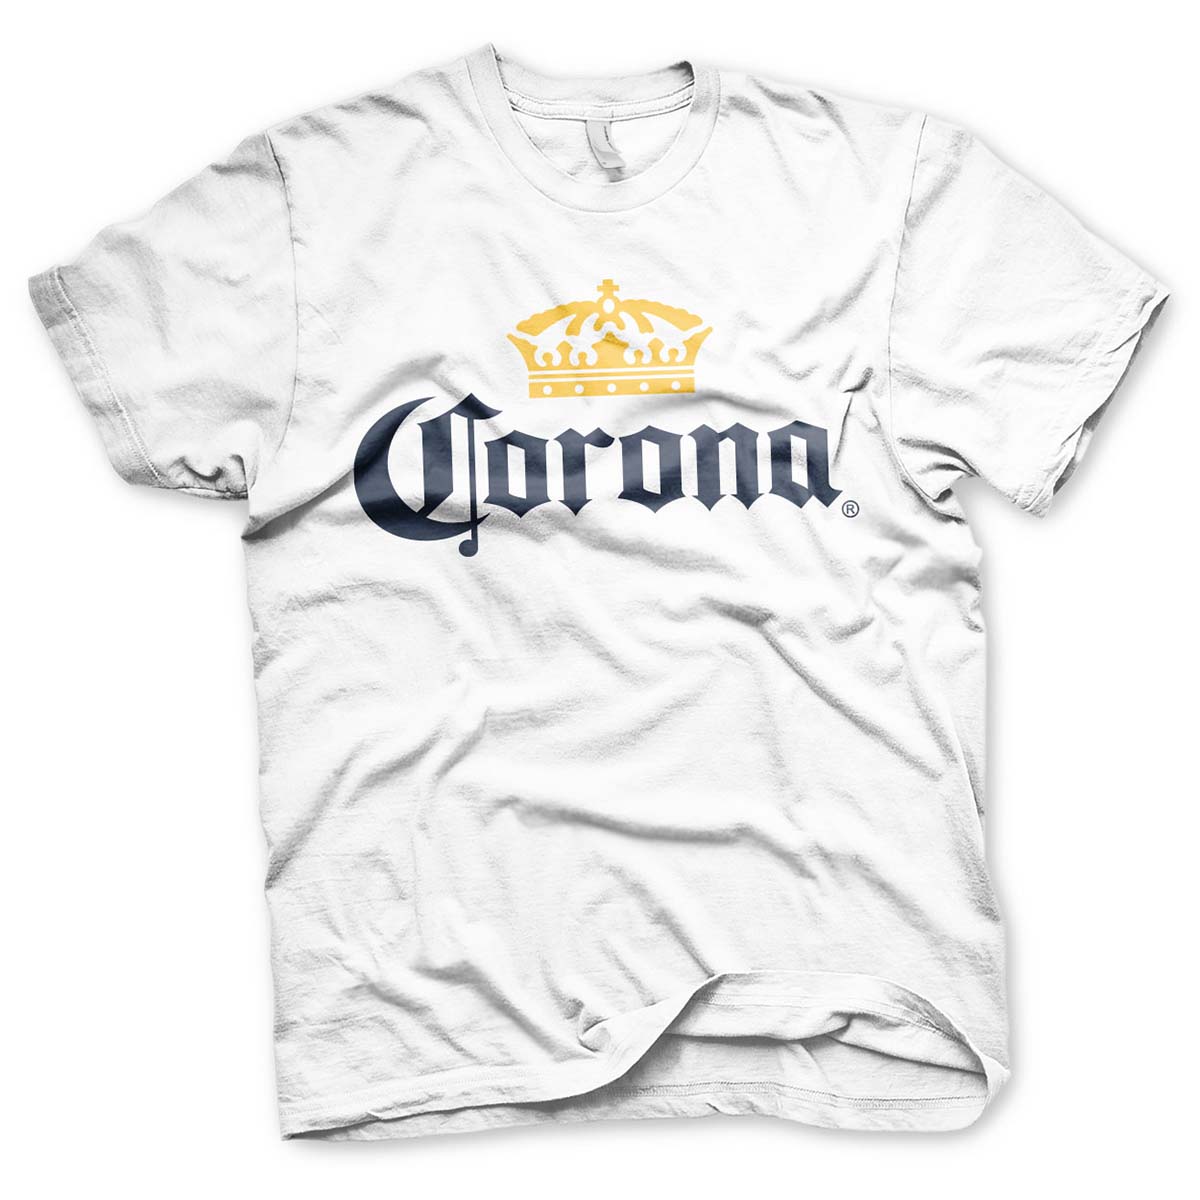 T-shirt, Corona beer XL